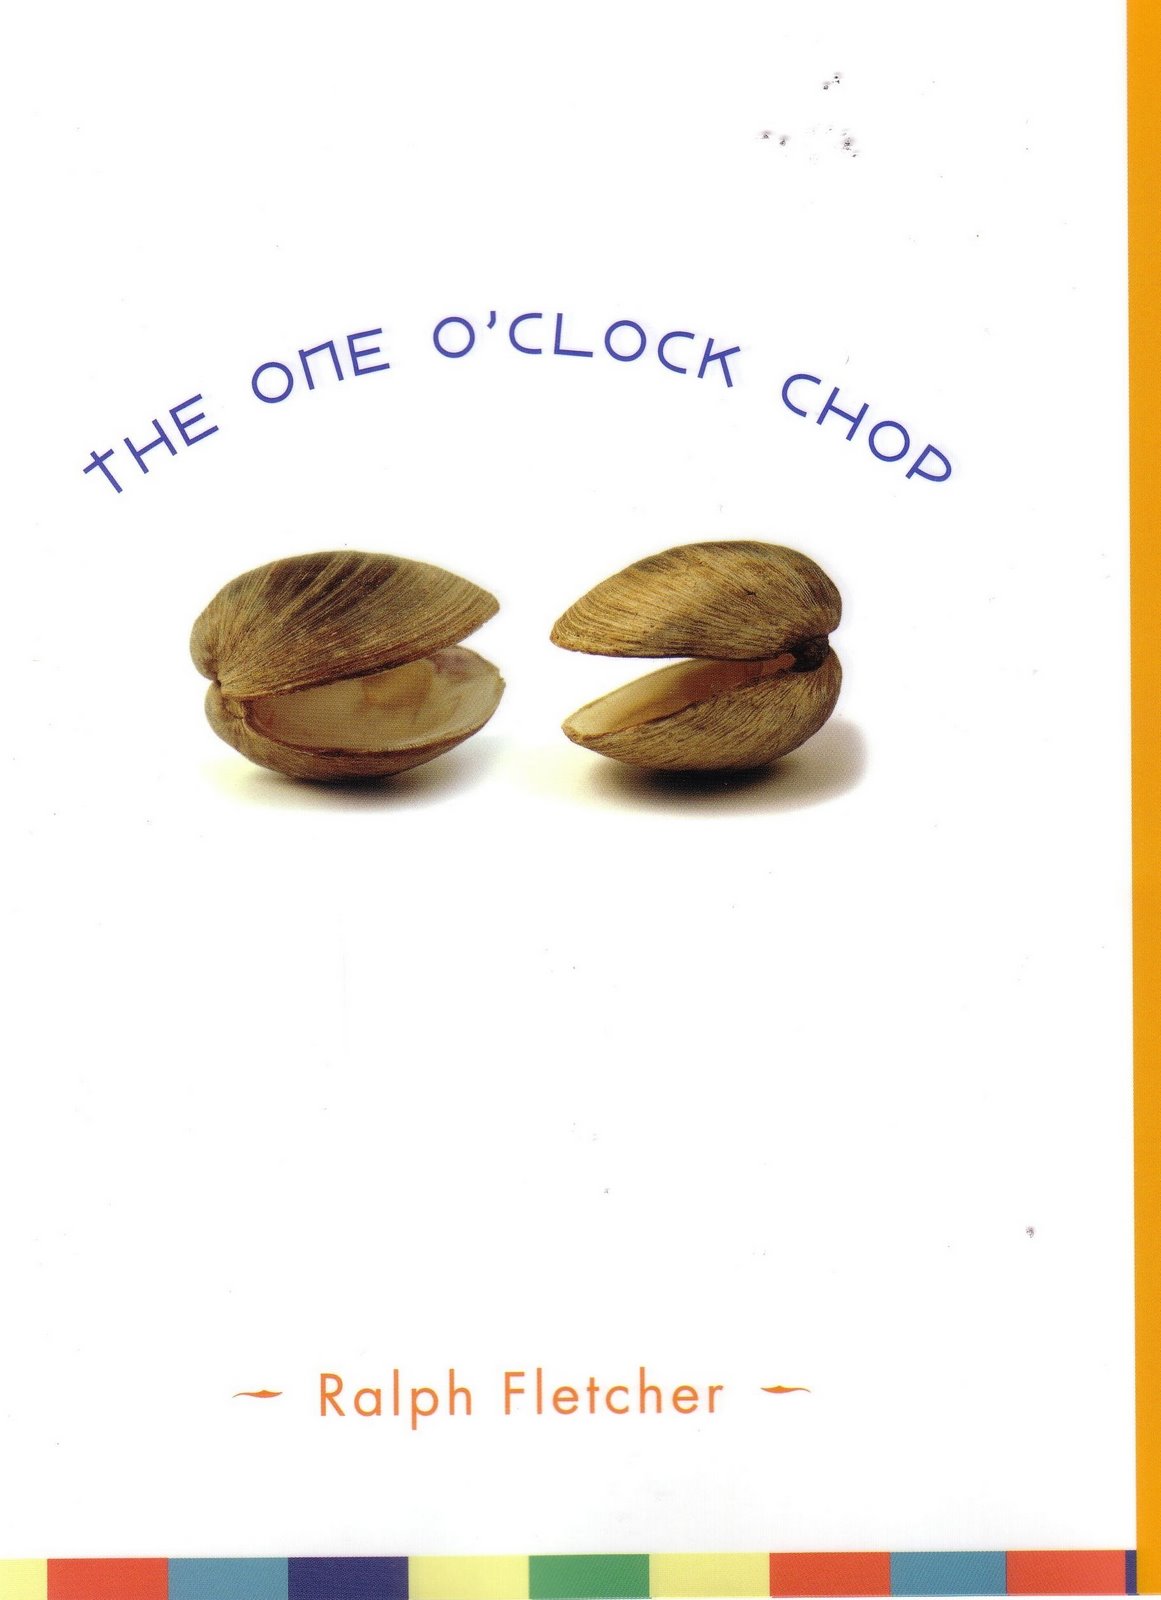 [The+One+O'clock+Chop.jpg]